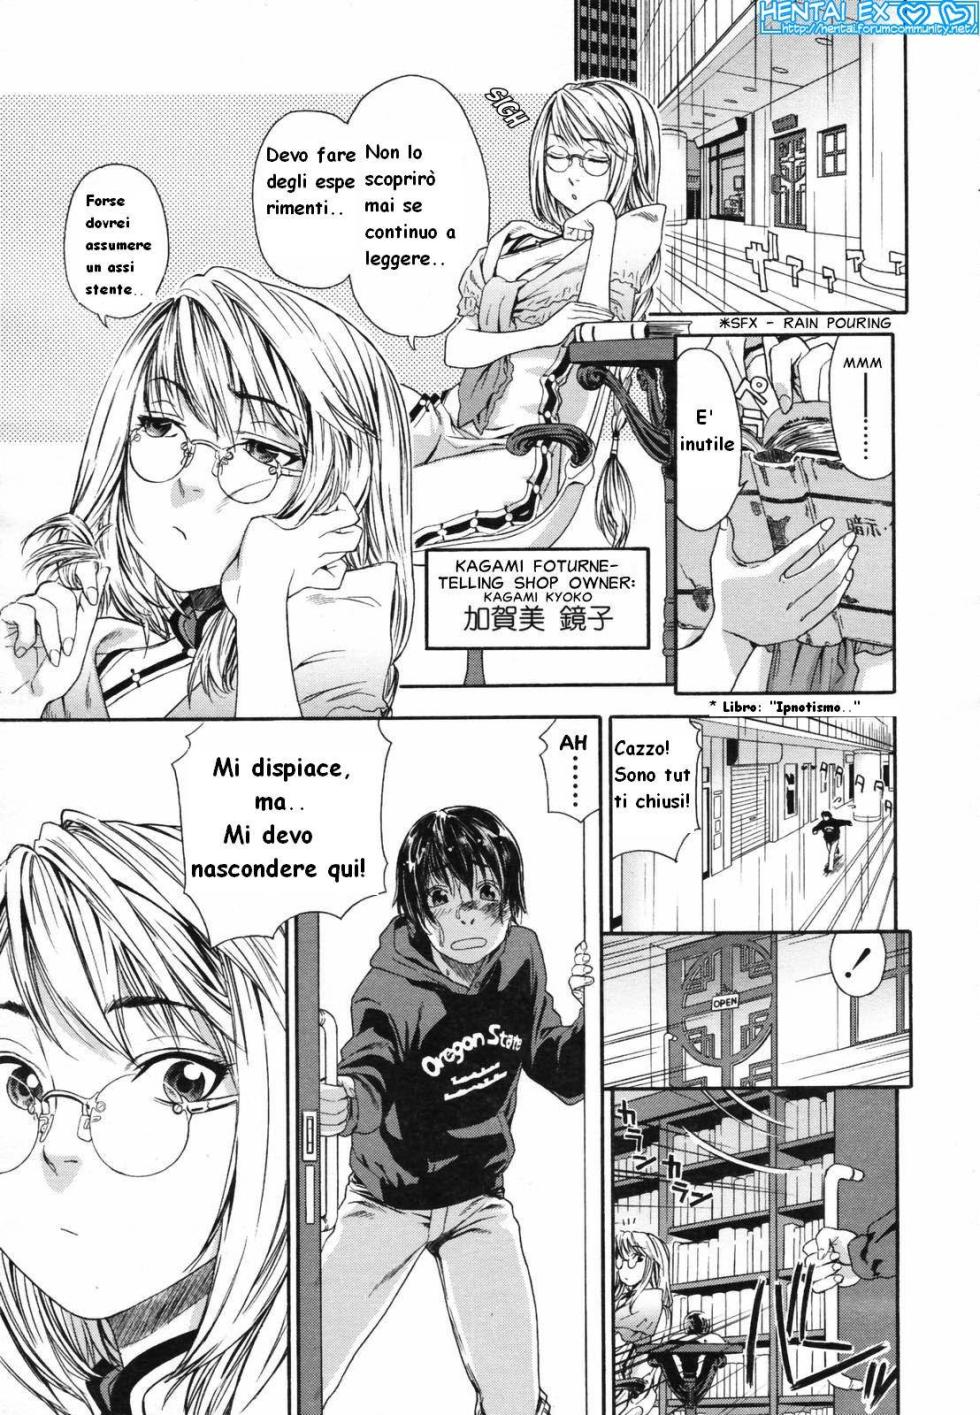 [Yamatogawa] Witchcraft [Hentai EX] (Italian) - Page 13